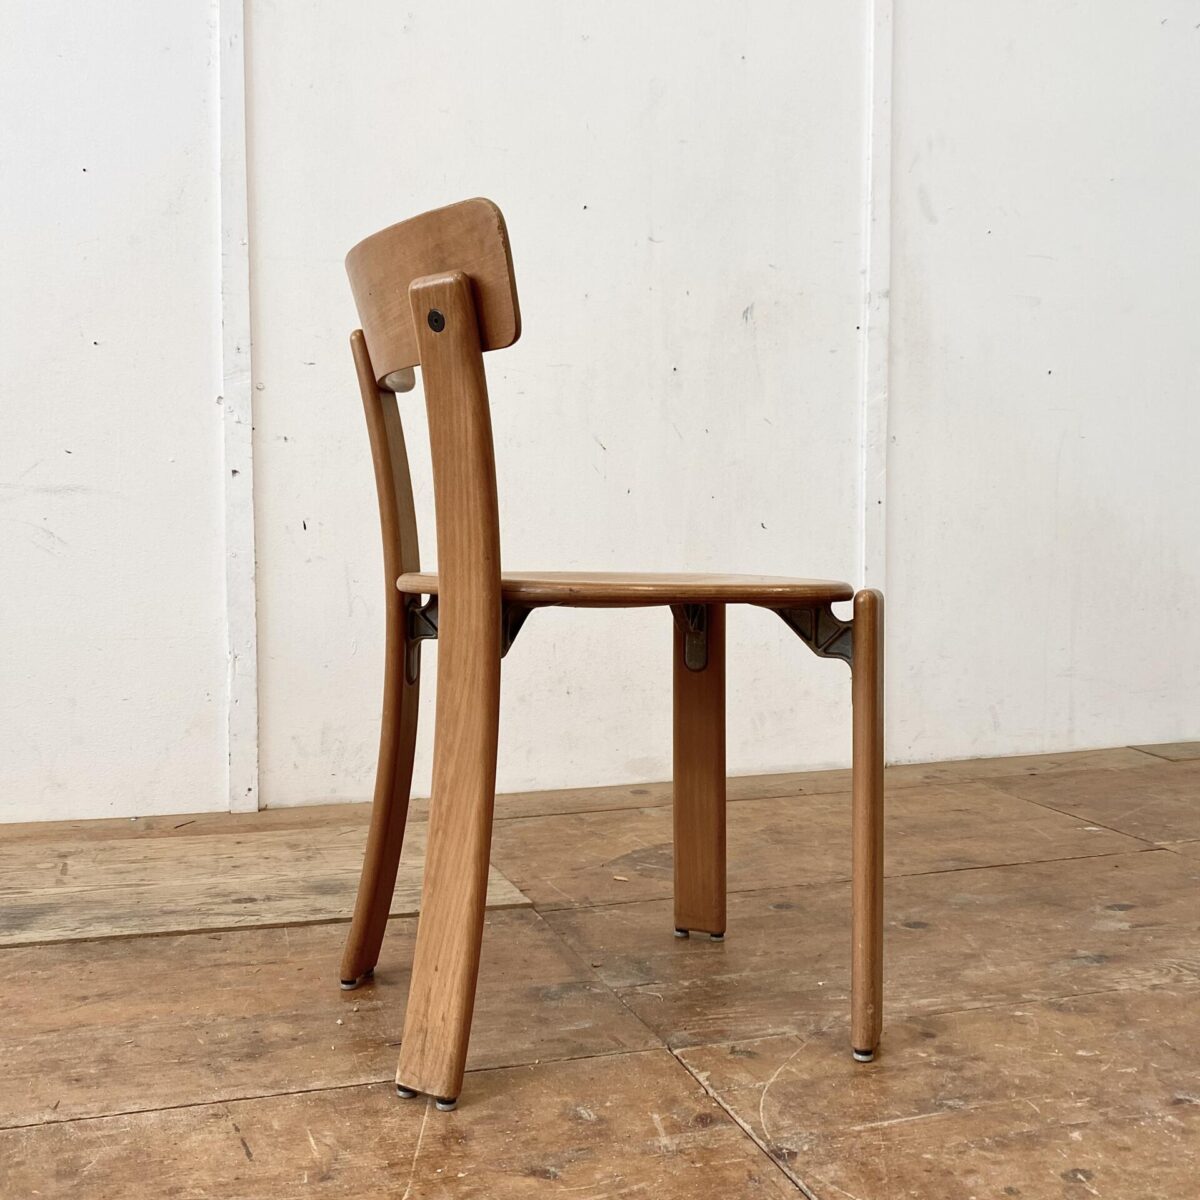 Deuxieme.shop Schweizer Buchenholz Stühle von Dietiker. Stühle aus Stein am Rhein. Preis pro Stuhl. Gebrauchte Qualitätsstühle mit diversen Gebrauchsspuren und Patina in stabilem Zustand. 